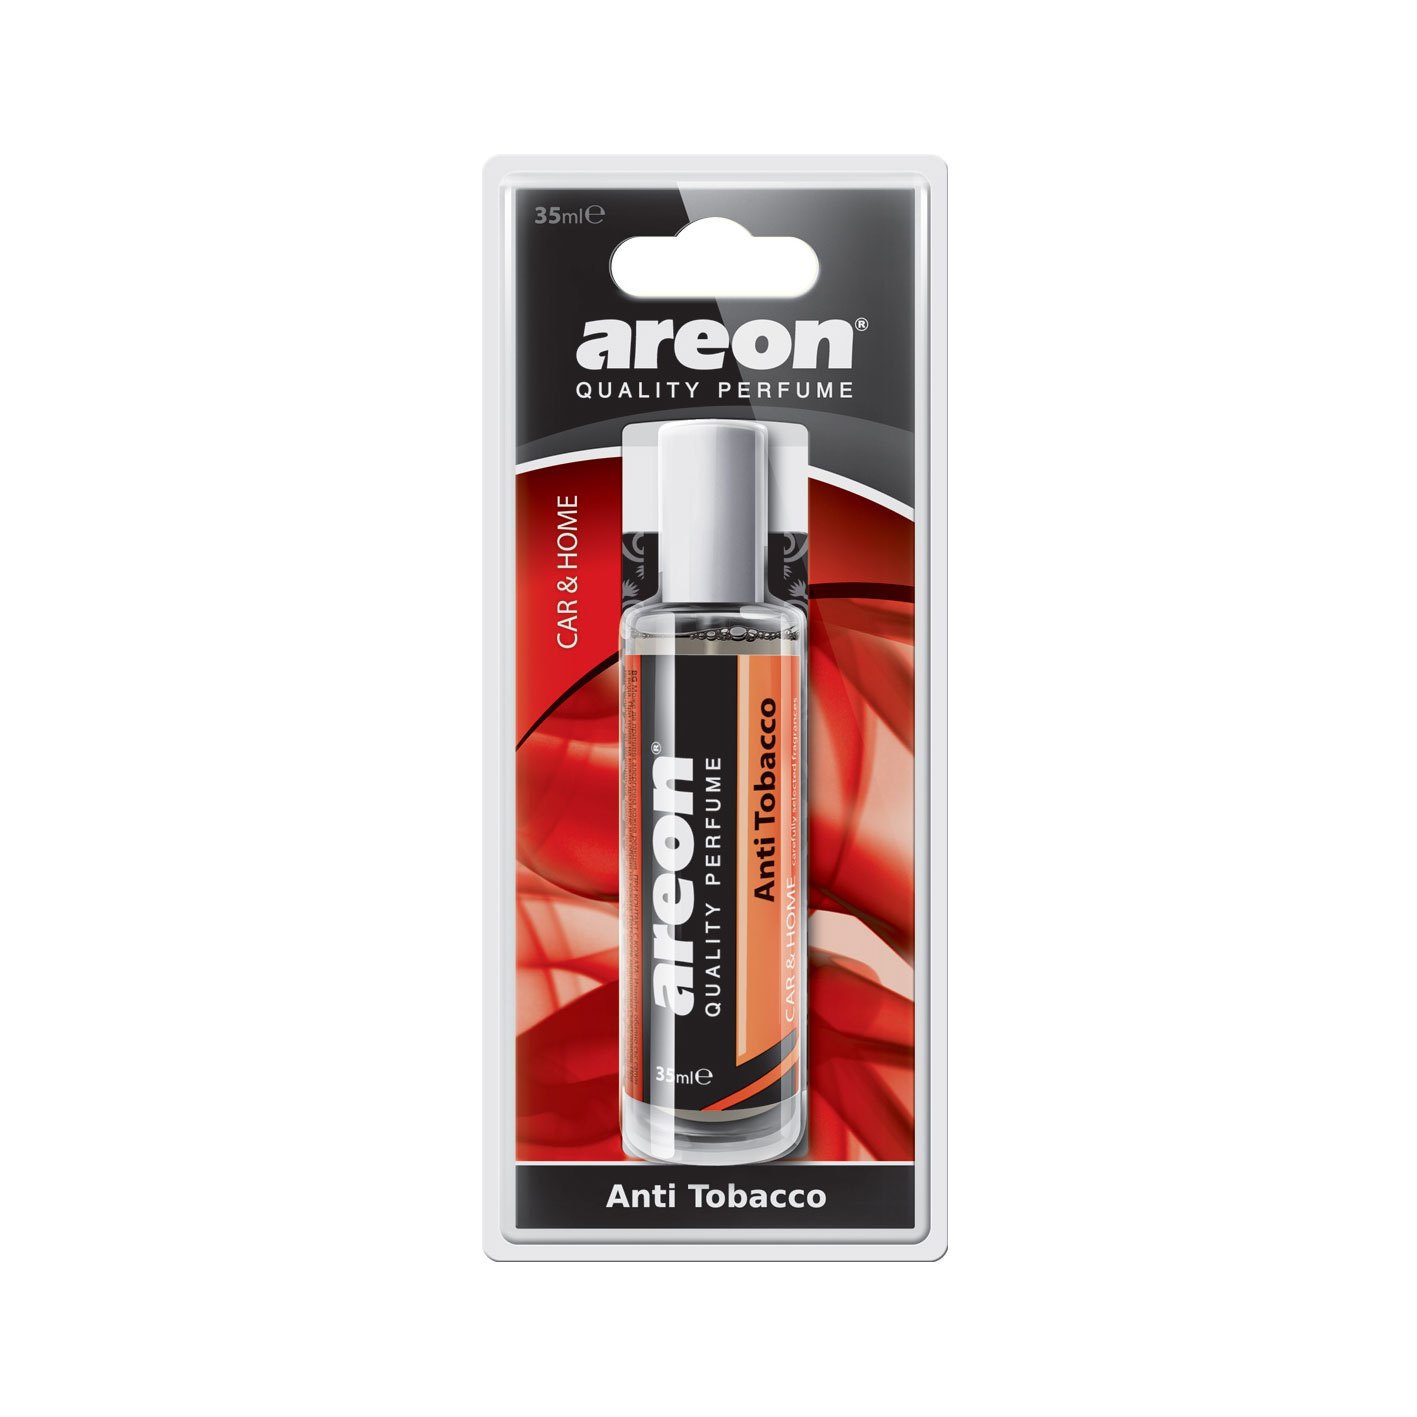 Areon Perfume 35ml Anti Tobacco